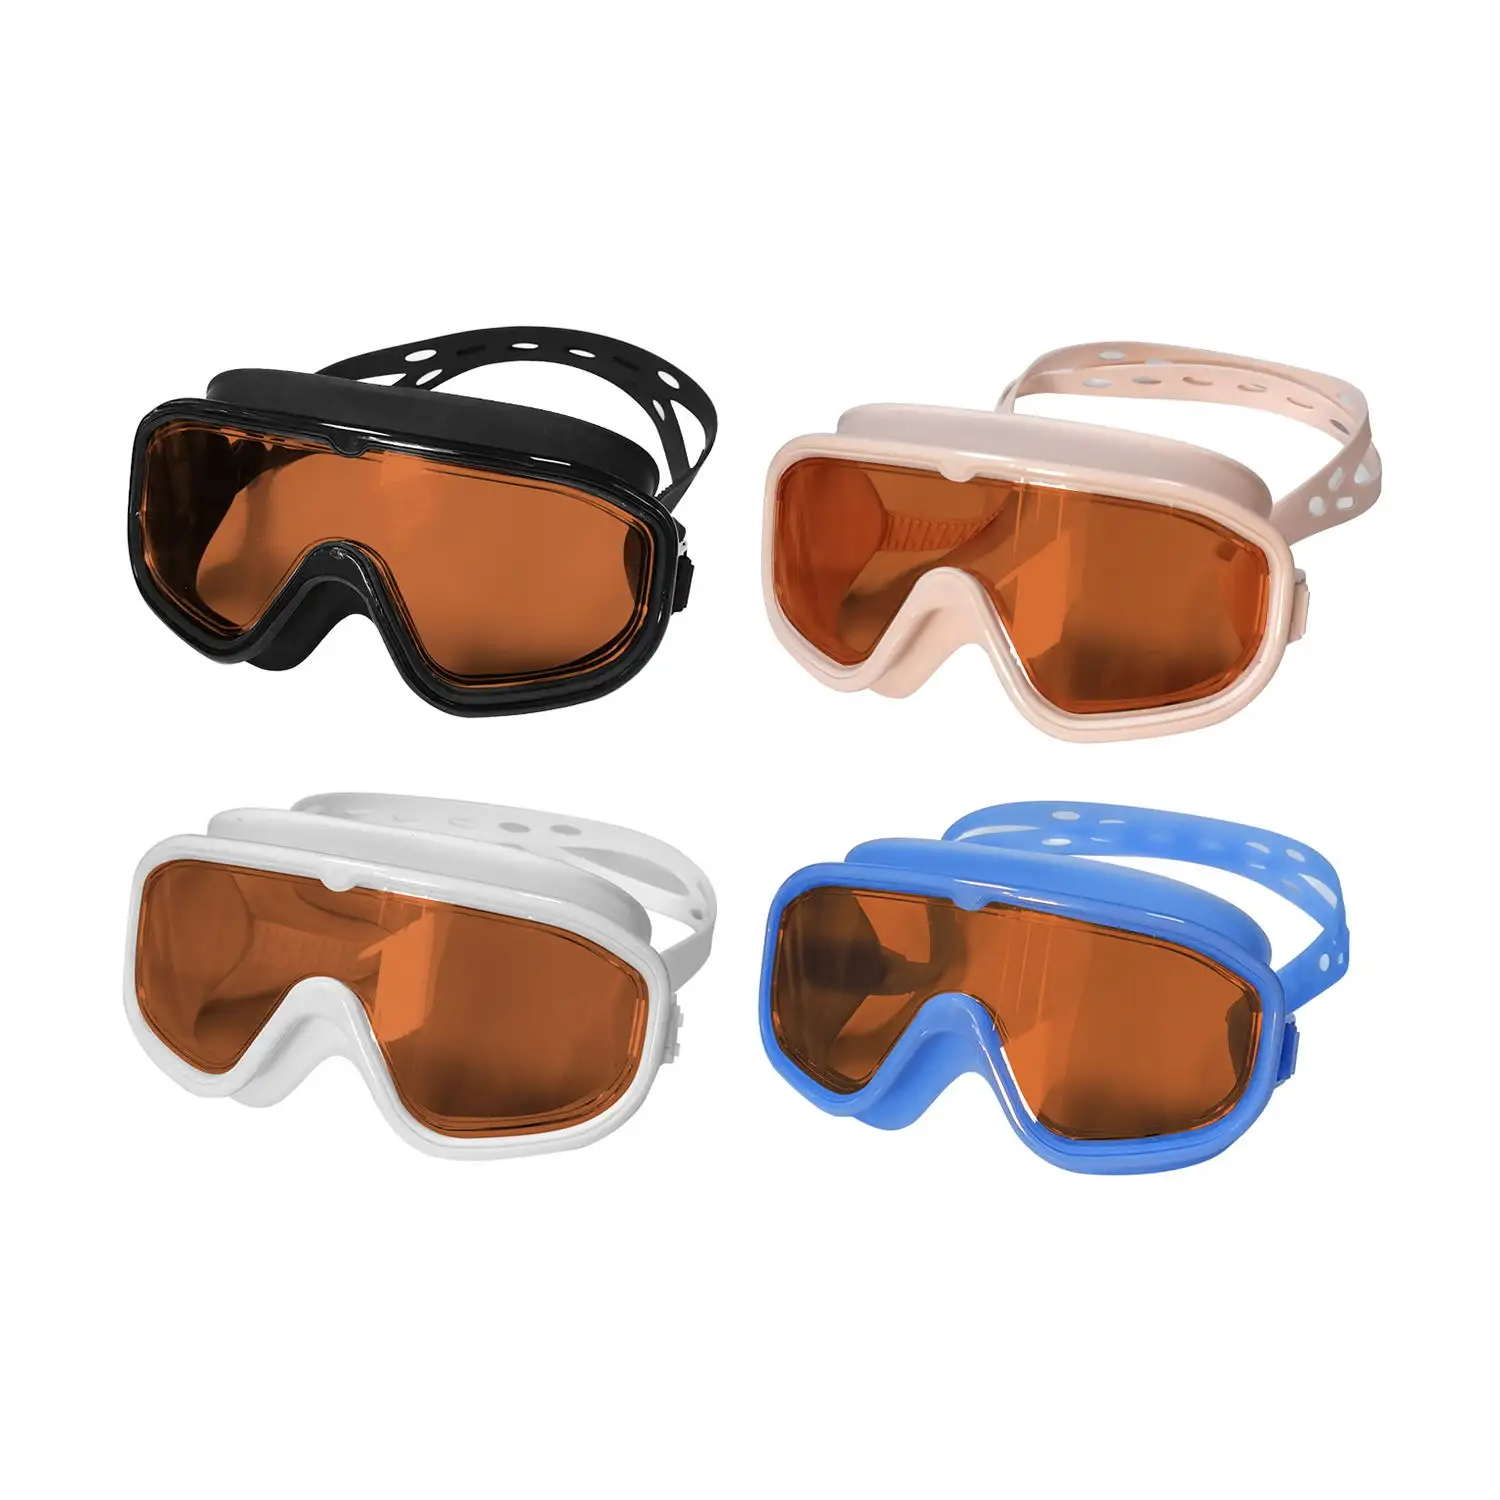 نظارات سباحة من مصنع المعدات الأصلي للأطفال بتصميم عصري مضادة للضباب نظارات بإطار كبير لحمام السباحة المائي نظارات سباحة رياضية للأطفال